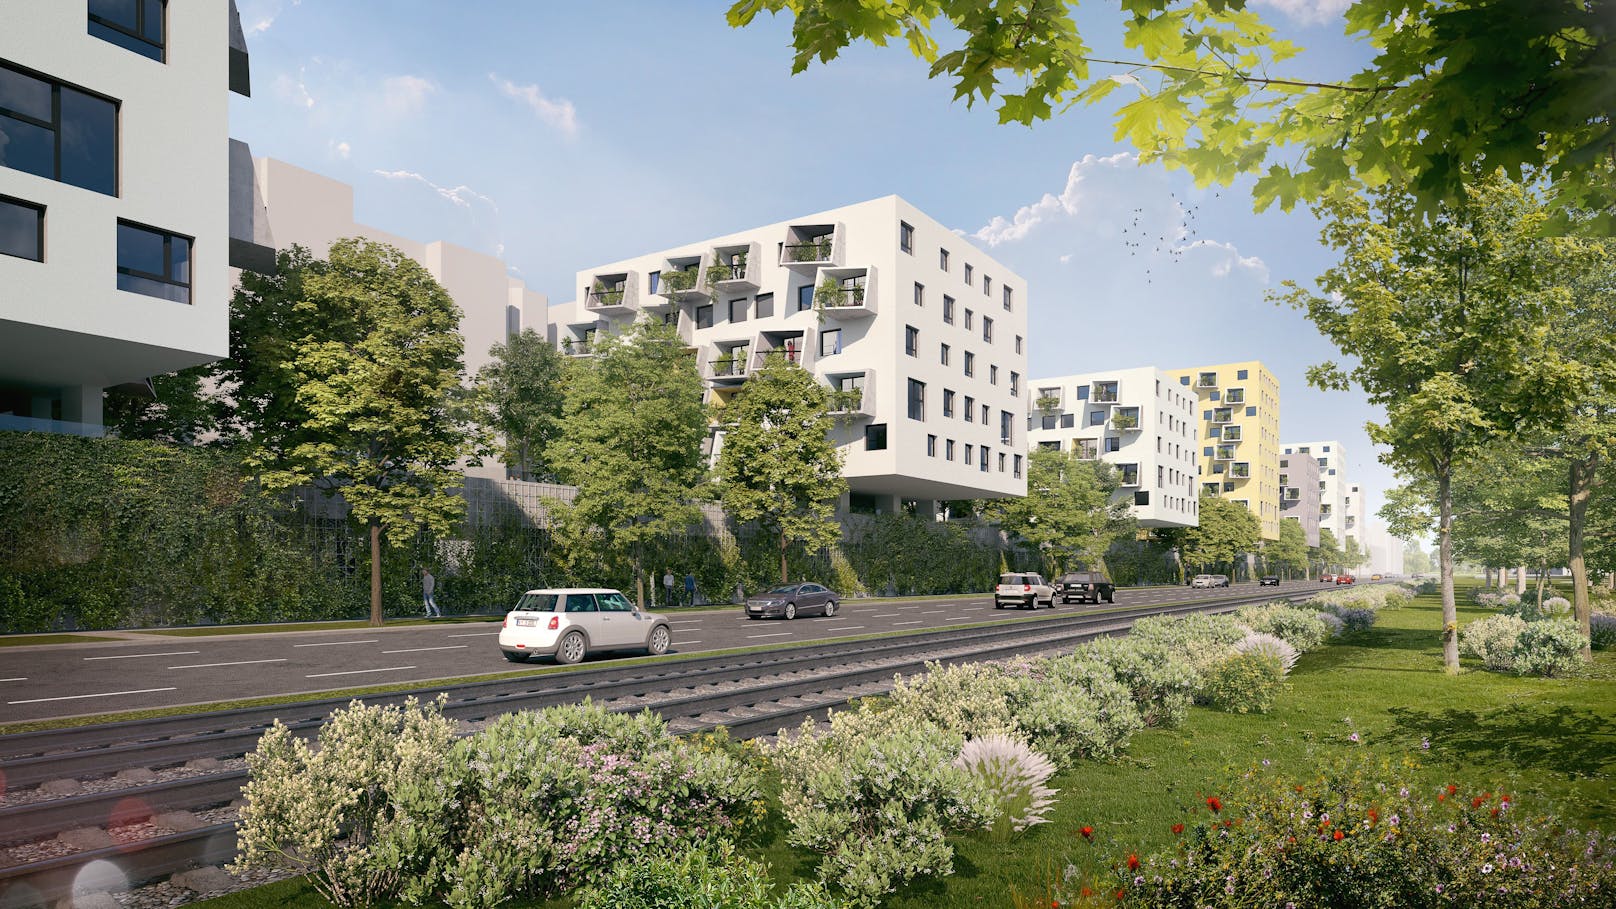 Am Donnerstag startet die Wohnungsvergabe für den Gemeindebau Neu am Handelskai 214a (Leopoldstadt).